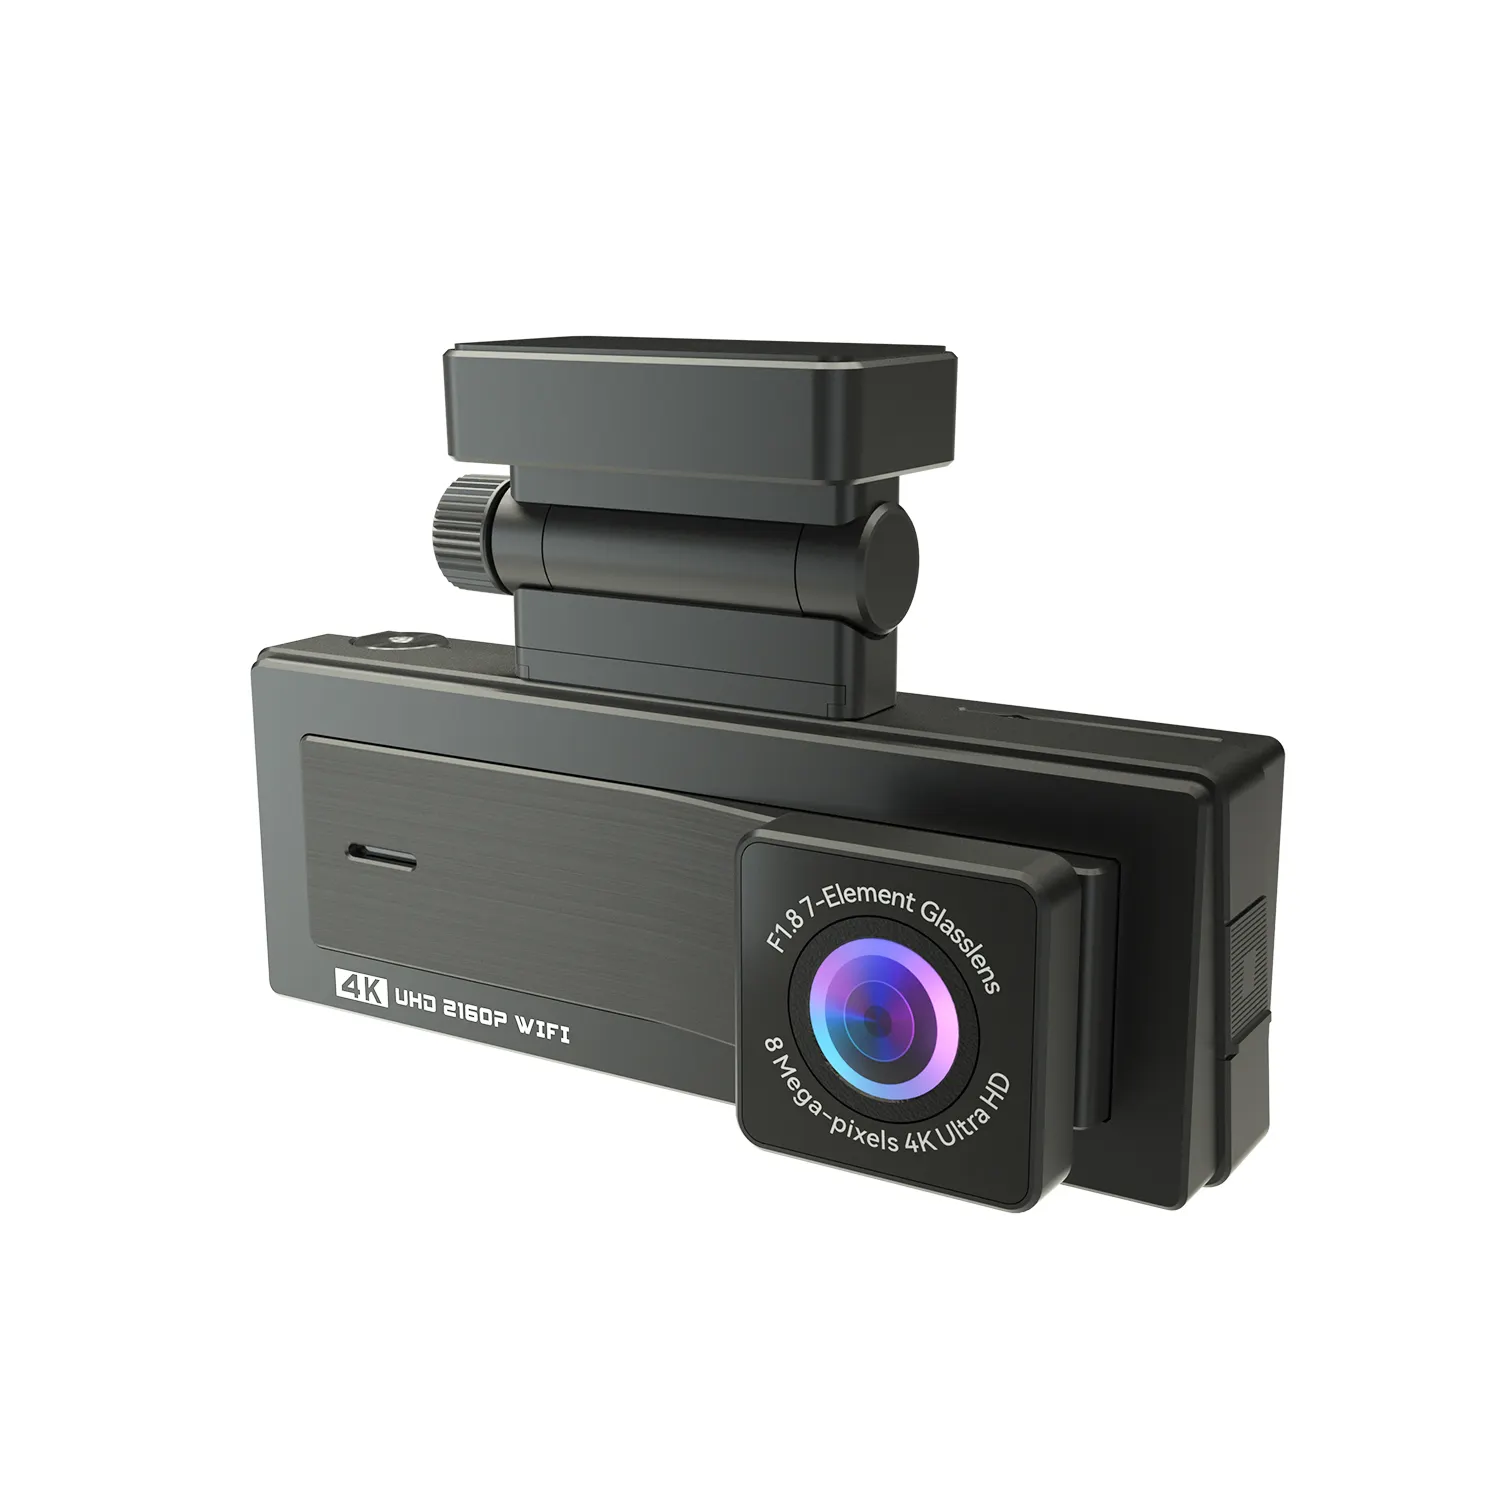 سيارات للبيع بالجملة صندوق أسود 1080P عدسة مزدوجة اندفاعة كام 3.16 "الرؤية الخلفية مرآة جهاز تسجيل فيديو رقمي للسيارات مع كاميرا للرؤية الليلية